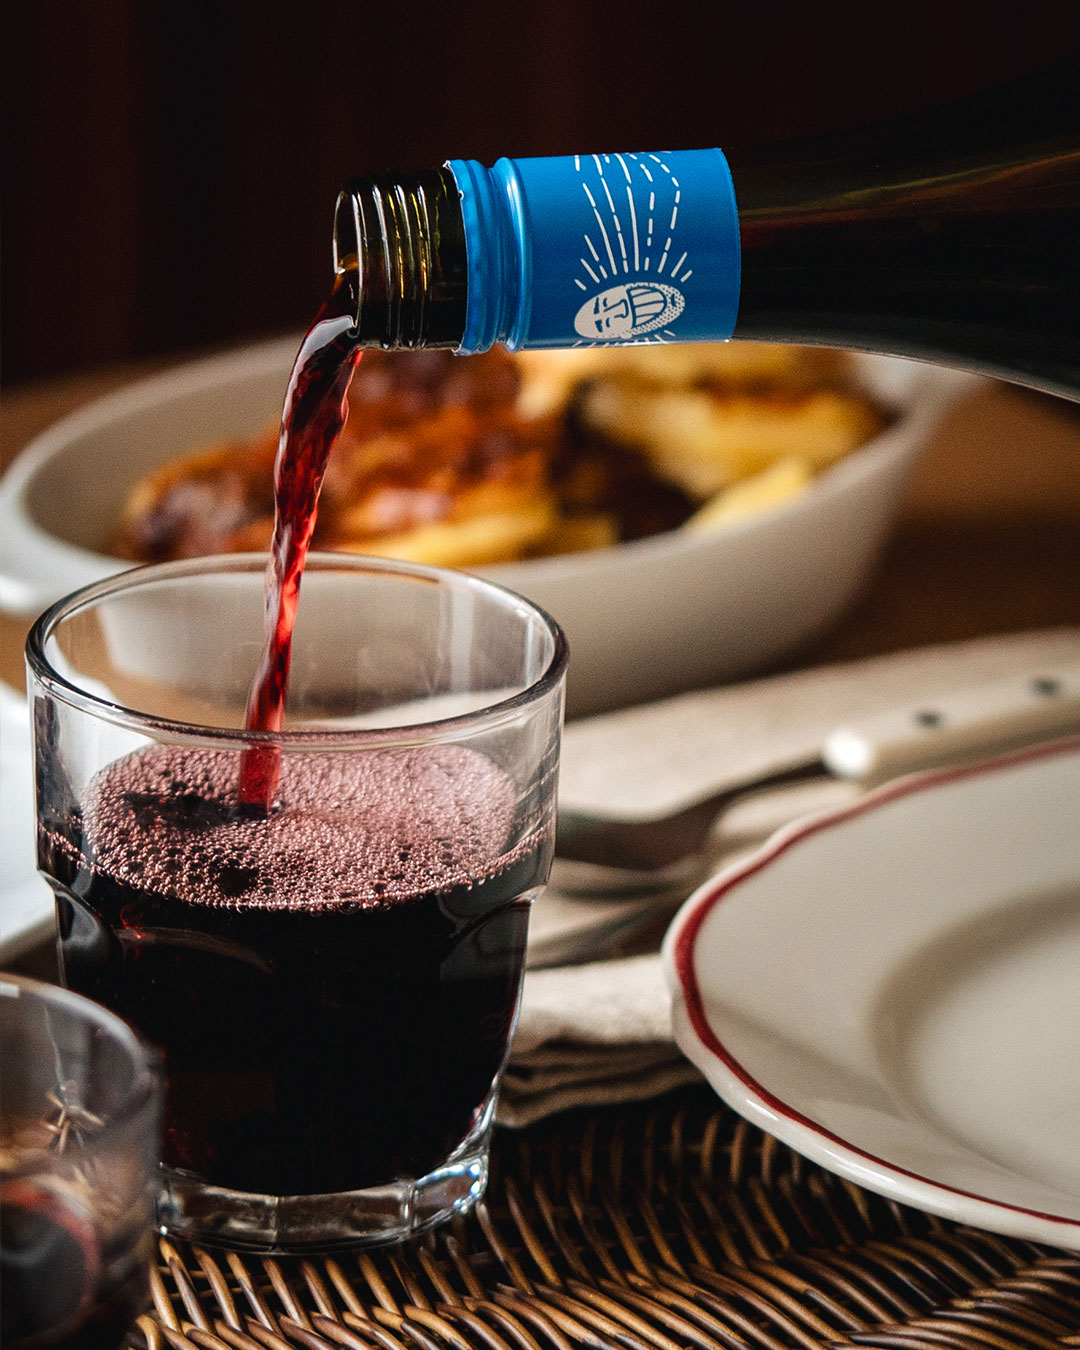 Les accords mets-vins en fonction du terroir, c’est oui. L’idée, c’est de servir un vin qui se rapproche géographiquement de la spécialité qu’on sert. Les vins et les plats issus d’un même terroir ont tendance à faire bon ménage et les Italiens sont fiers de leurs traditions régionales.